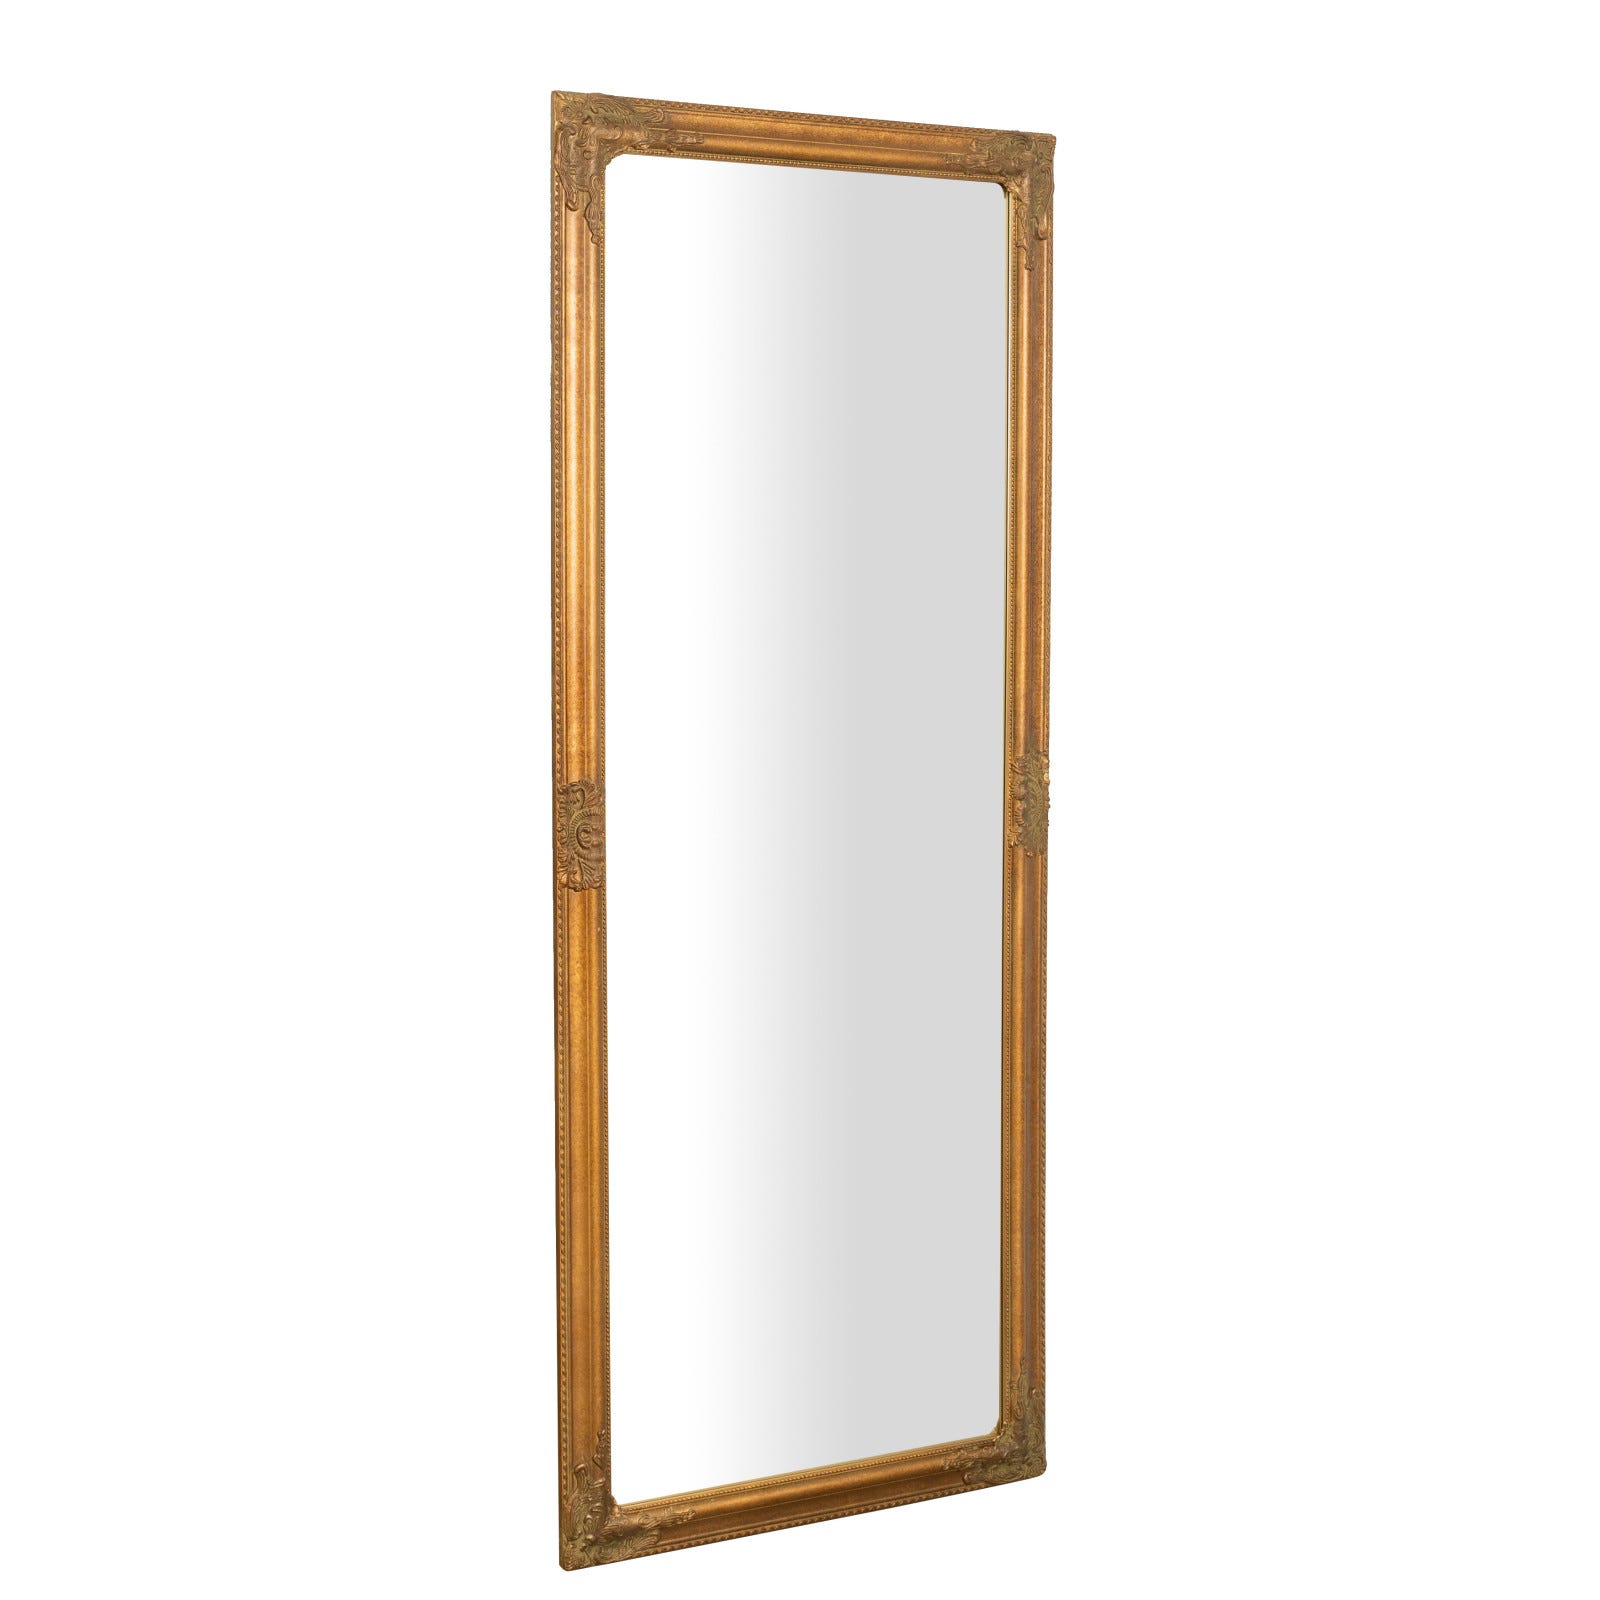 Espejo con marco dorado - El mueble clásico italiano